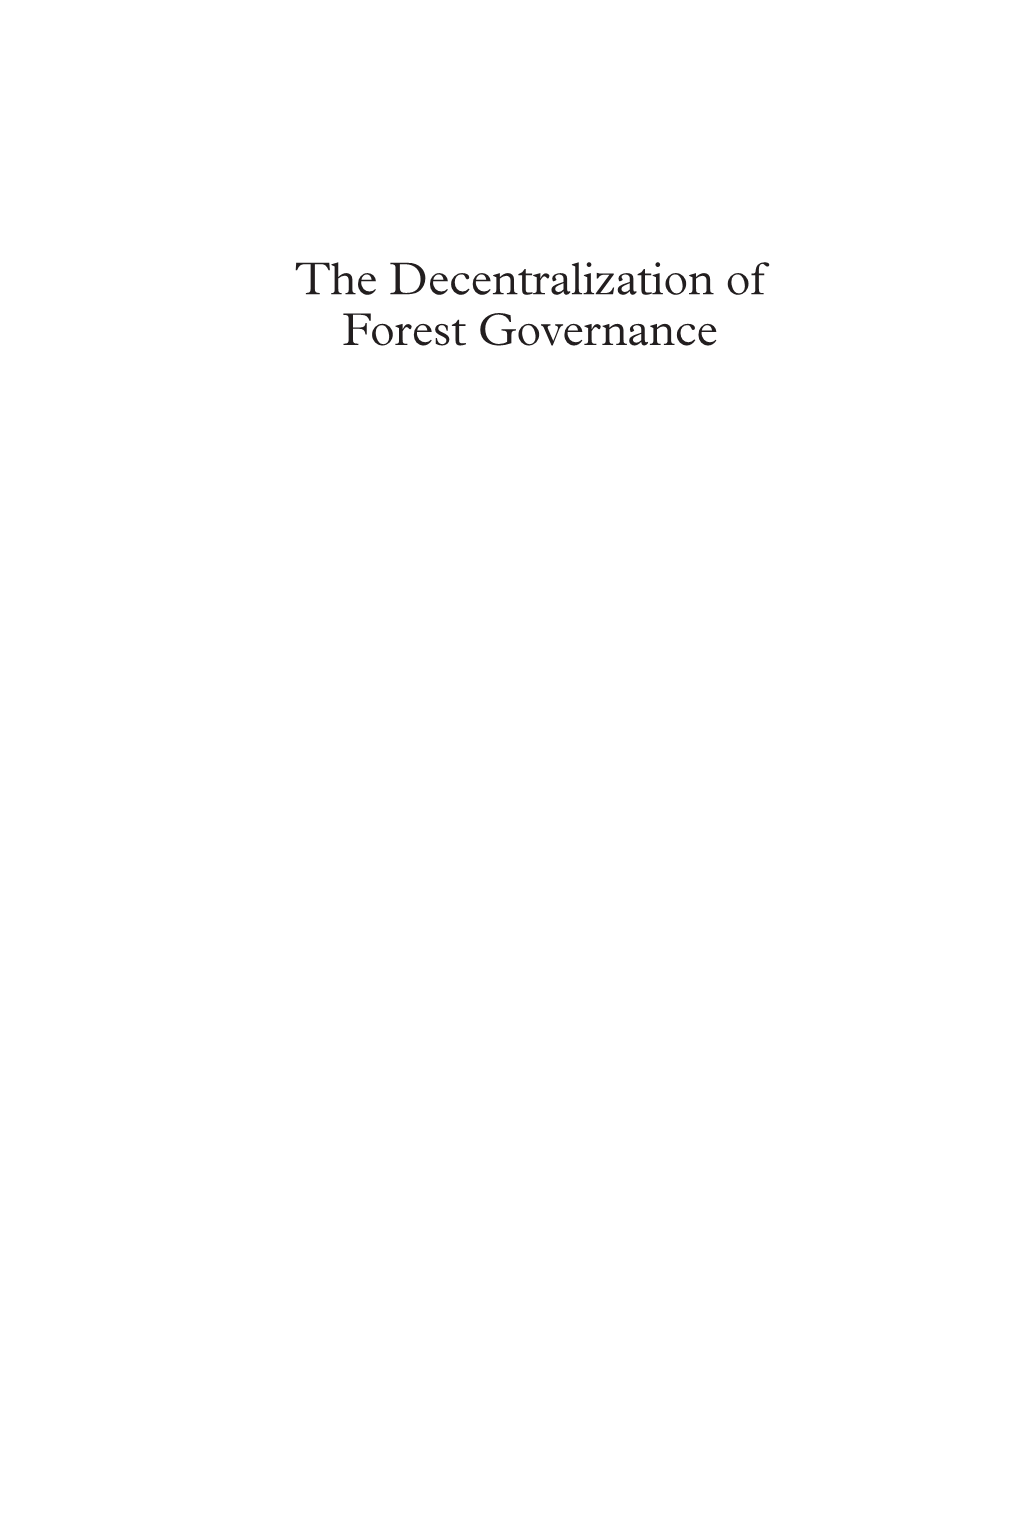 The Decentralization of Forest Governance ES DFG 6-10 8/10/08 17:03 Page Ii